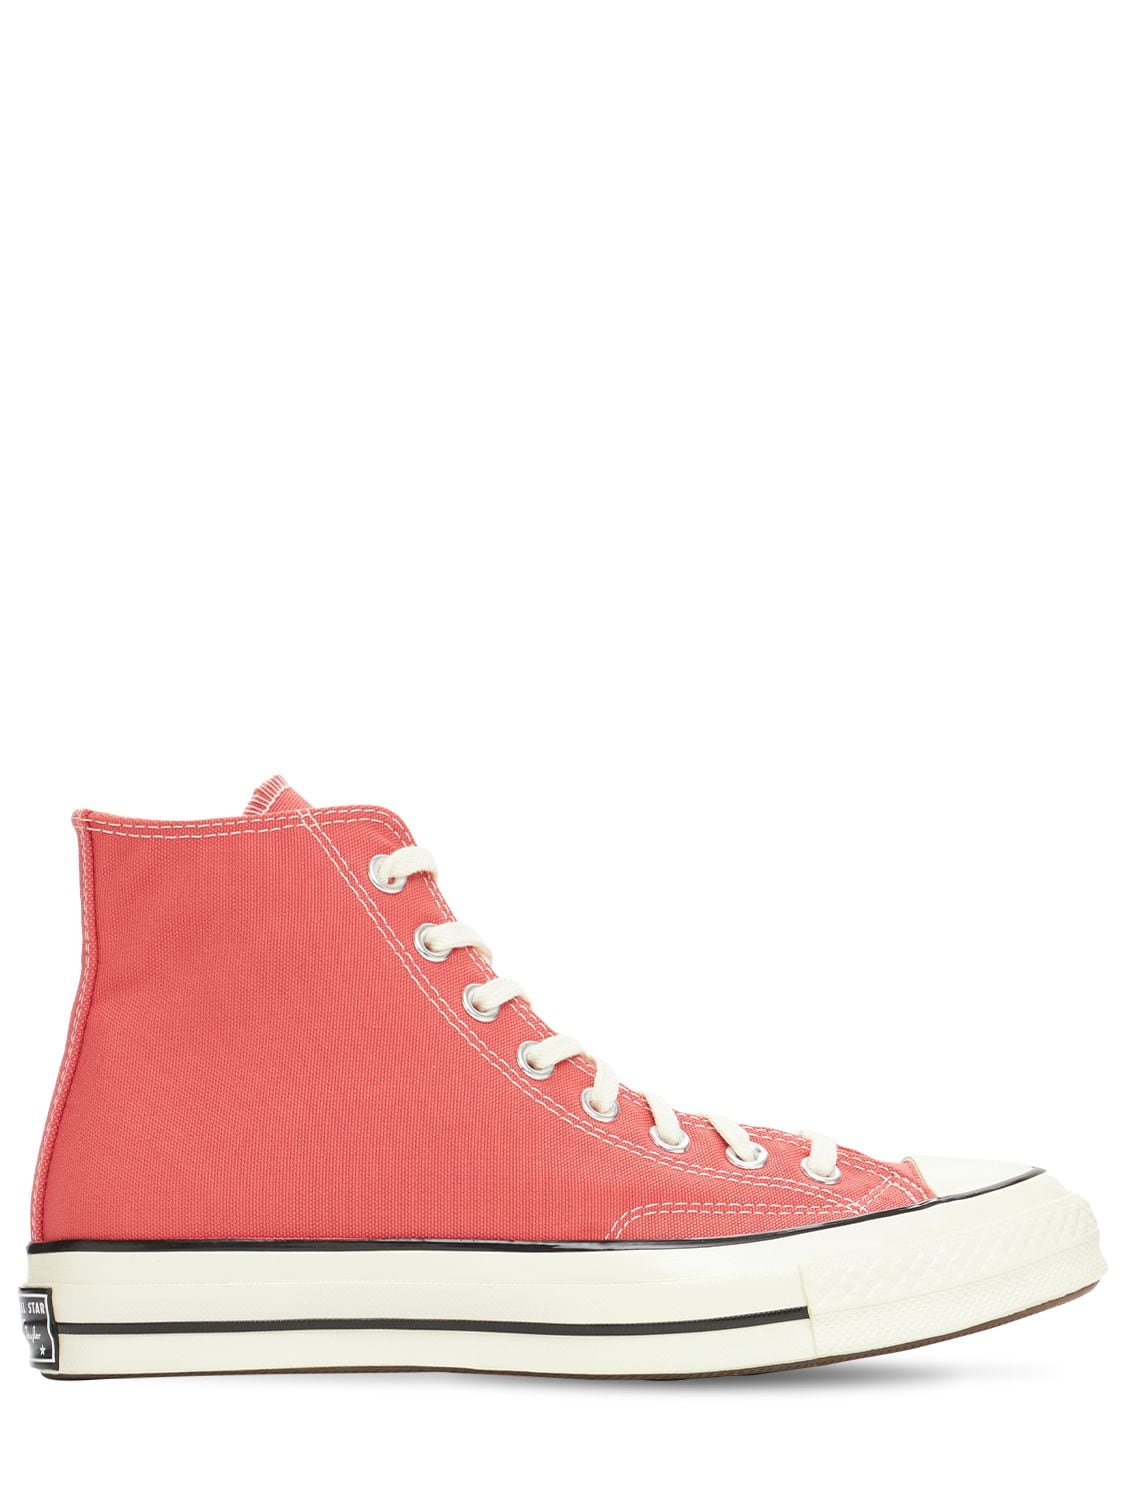 Converse - Chuck 70 sneakers - Pink | Luisaviaroma